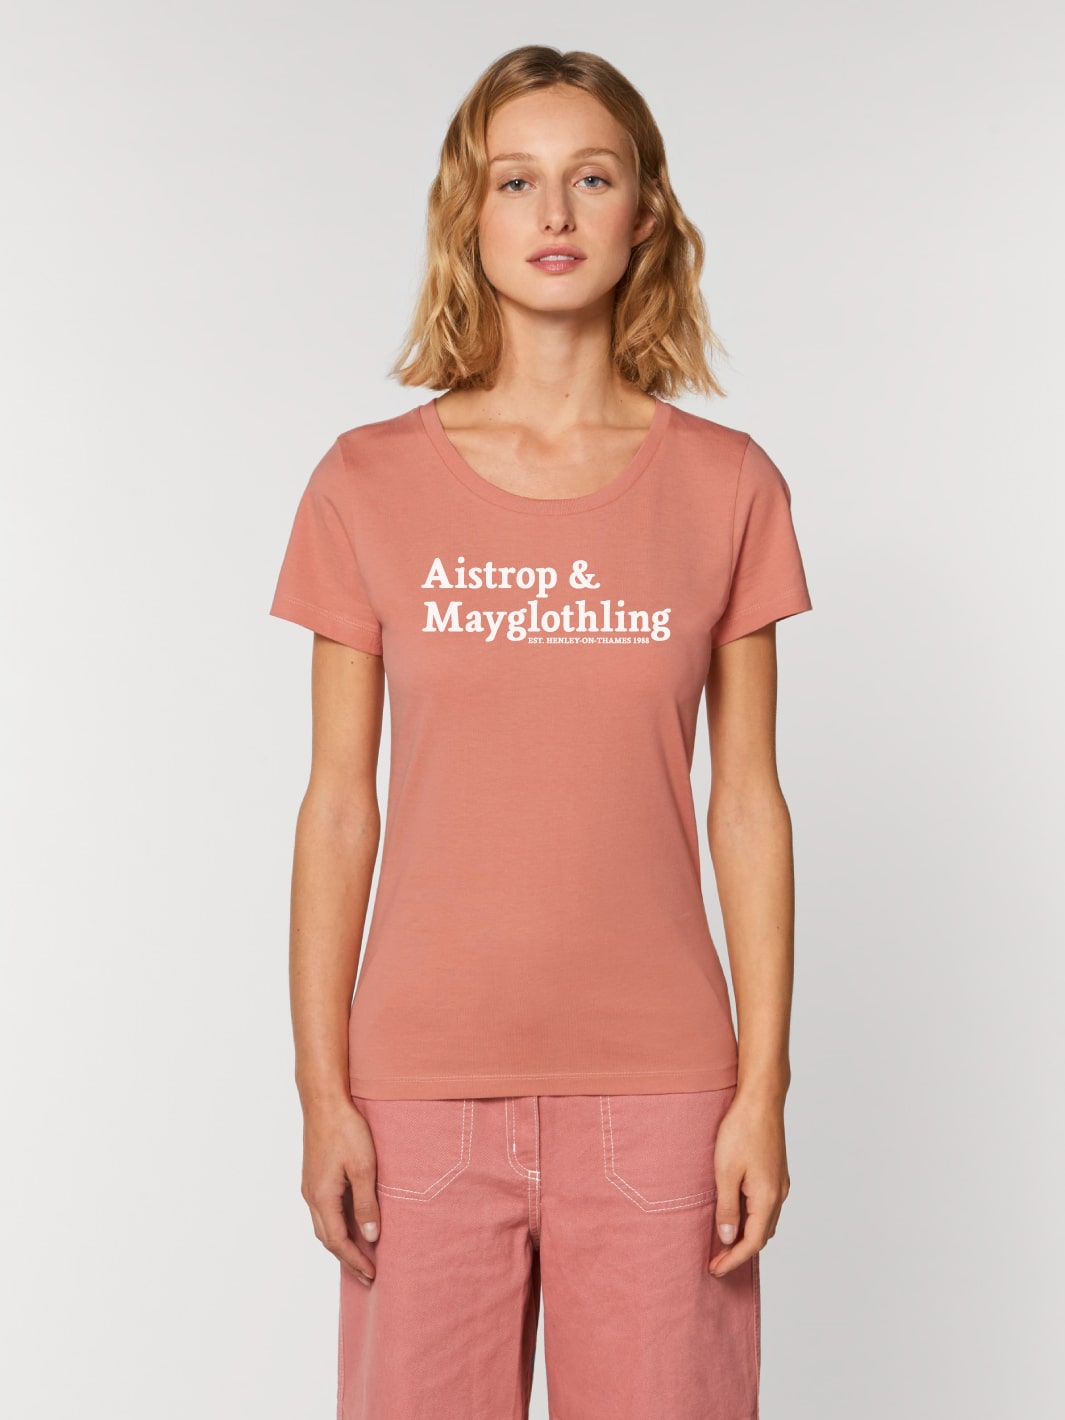 Aistrop & Mayglothling T-Shirt